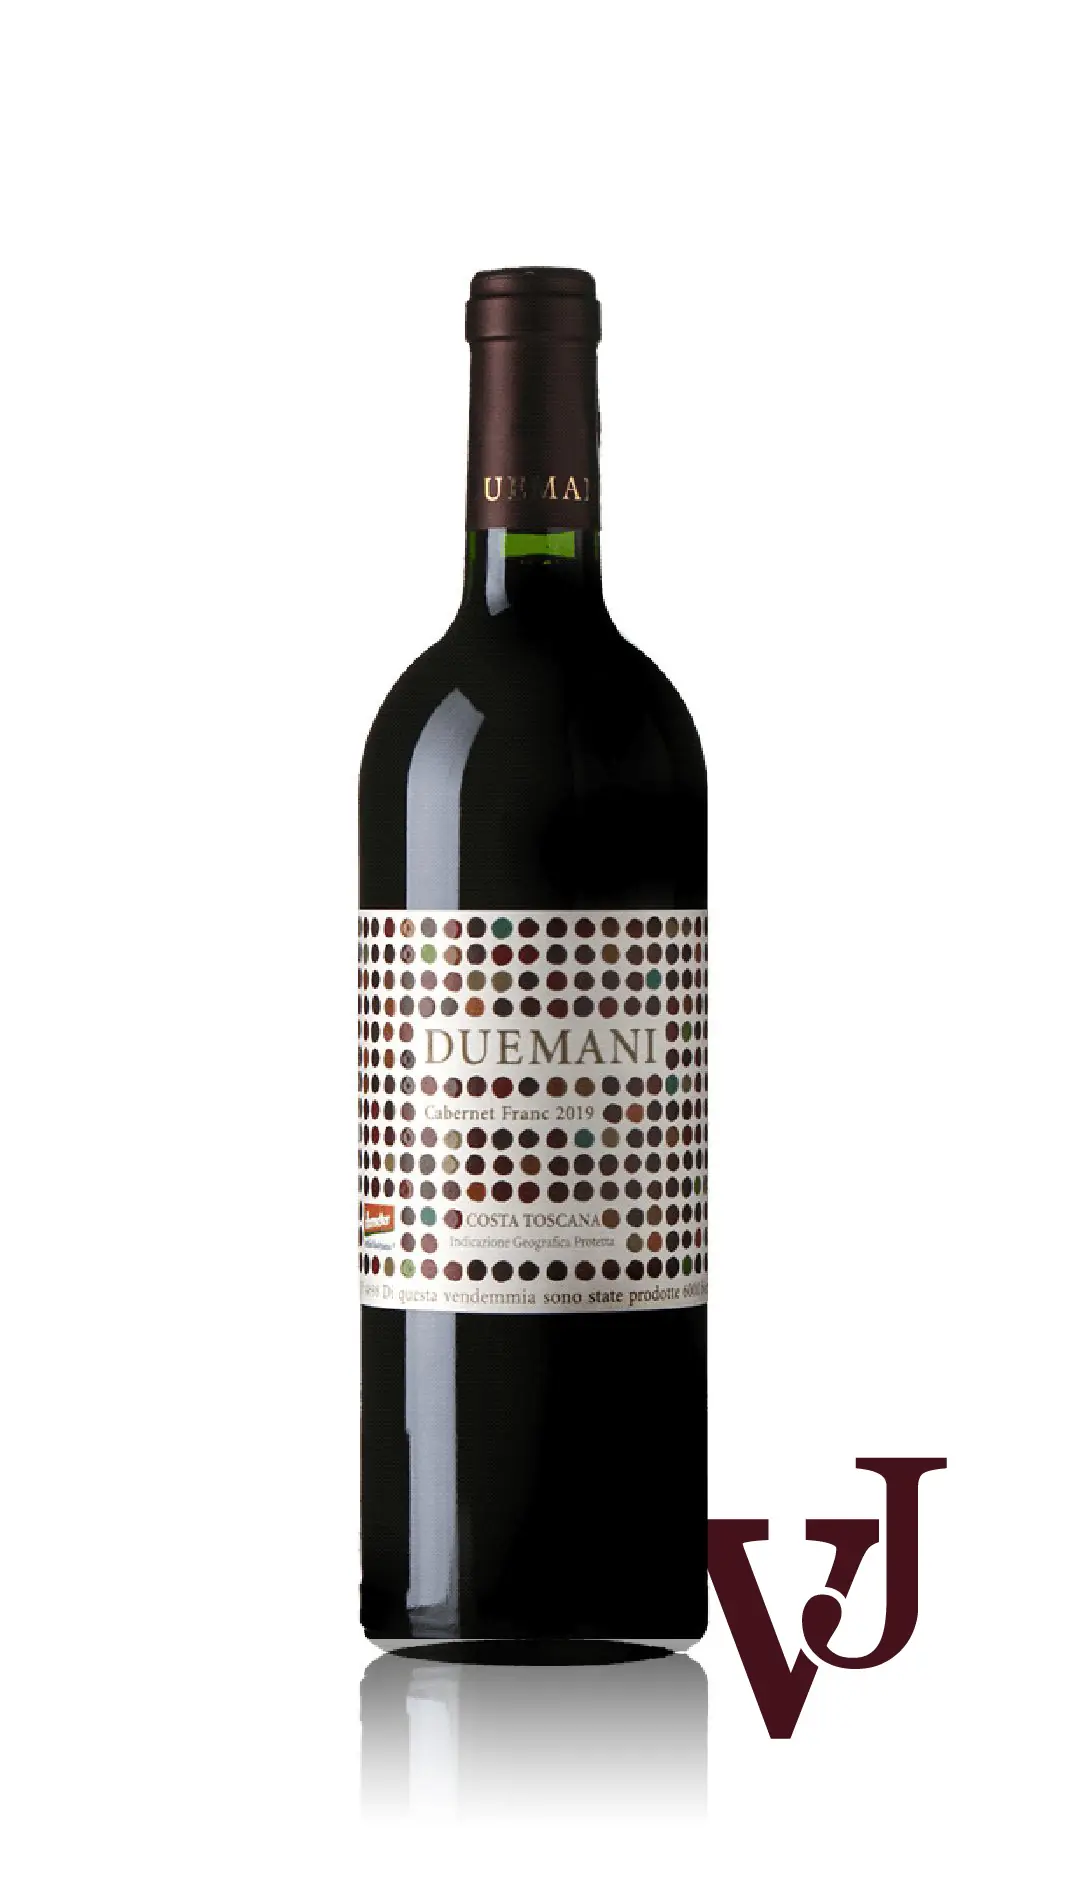 Rött Vin - Duemani Cabernet franc 2019 artikel nummer 9395701 från producenten Duemani från Italien - Vinjournalen.se